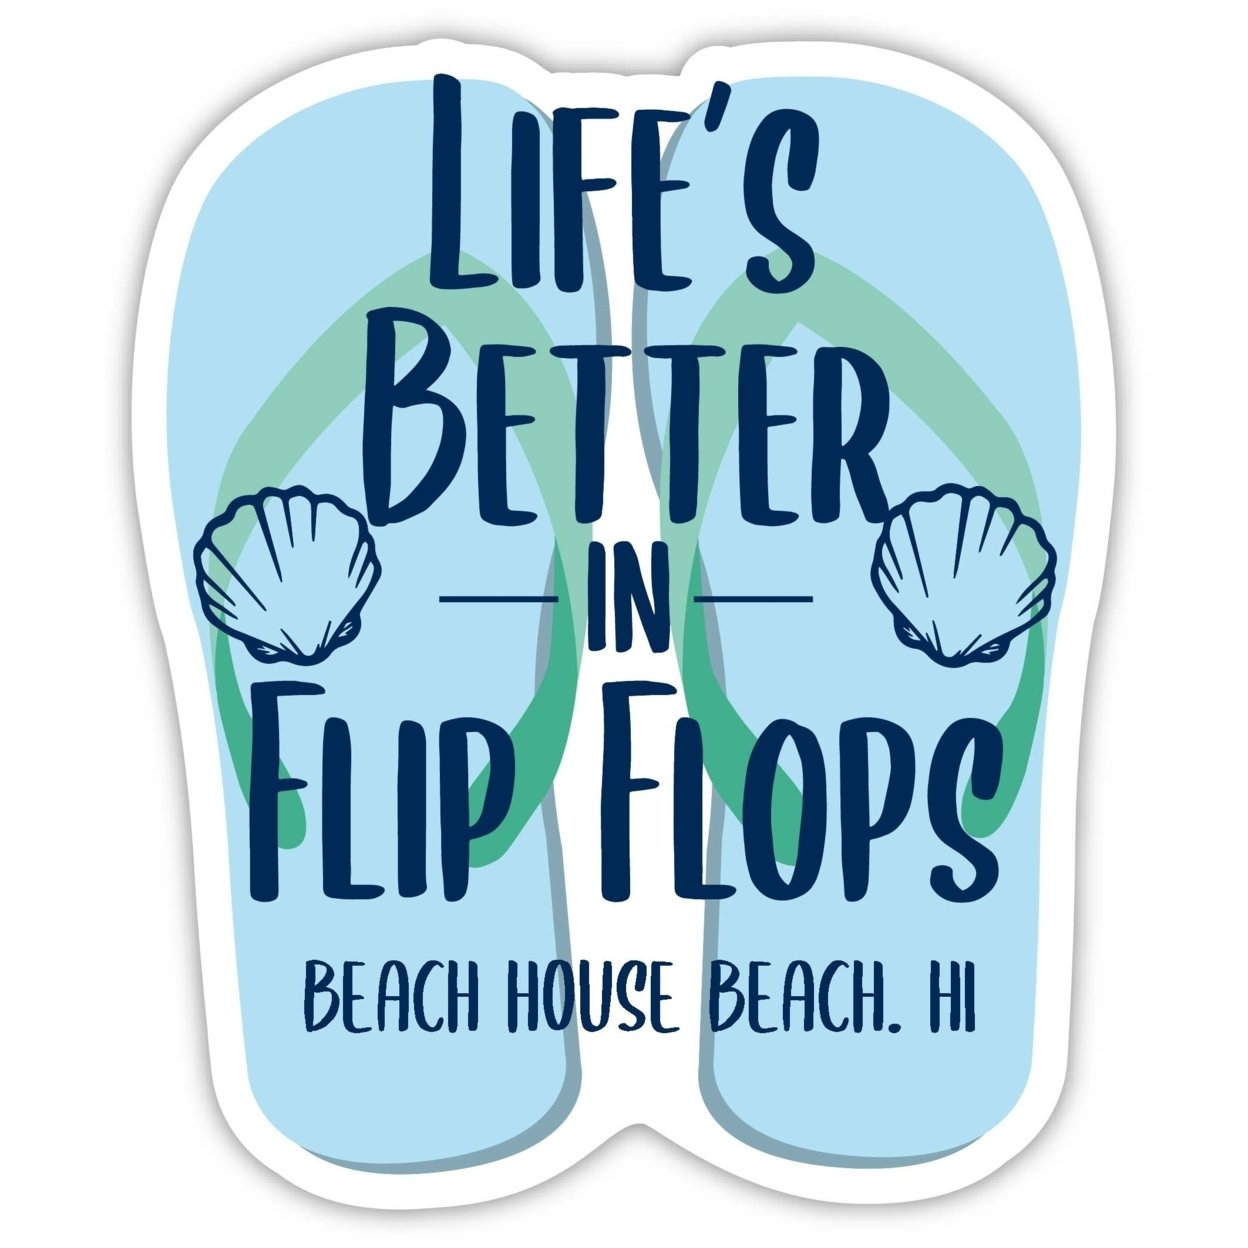 Beach House Beach Hawaii Souvenir 4 Inch Vinyl Decal Sticker Flip Flop Design